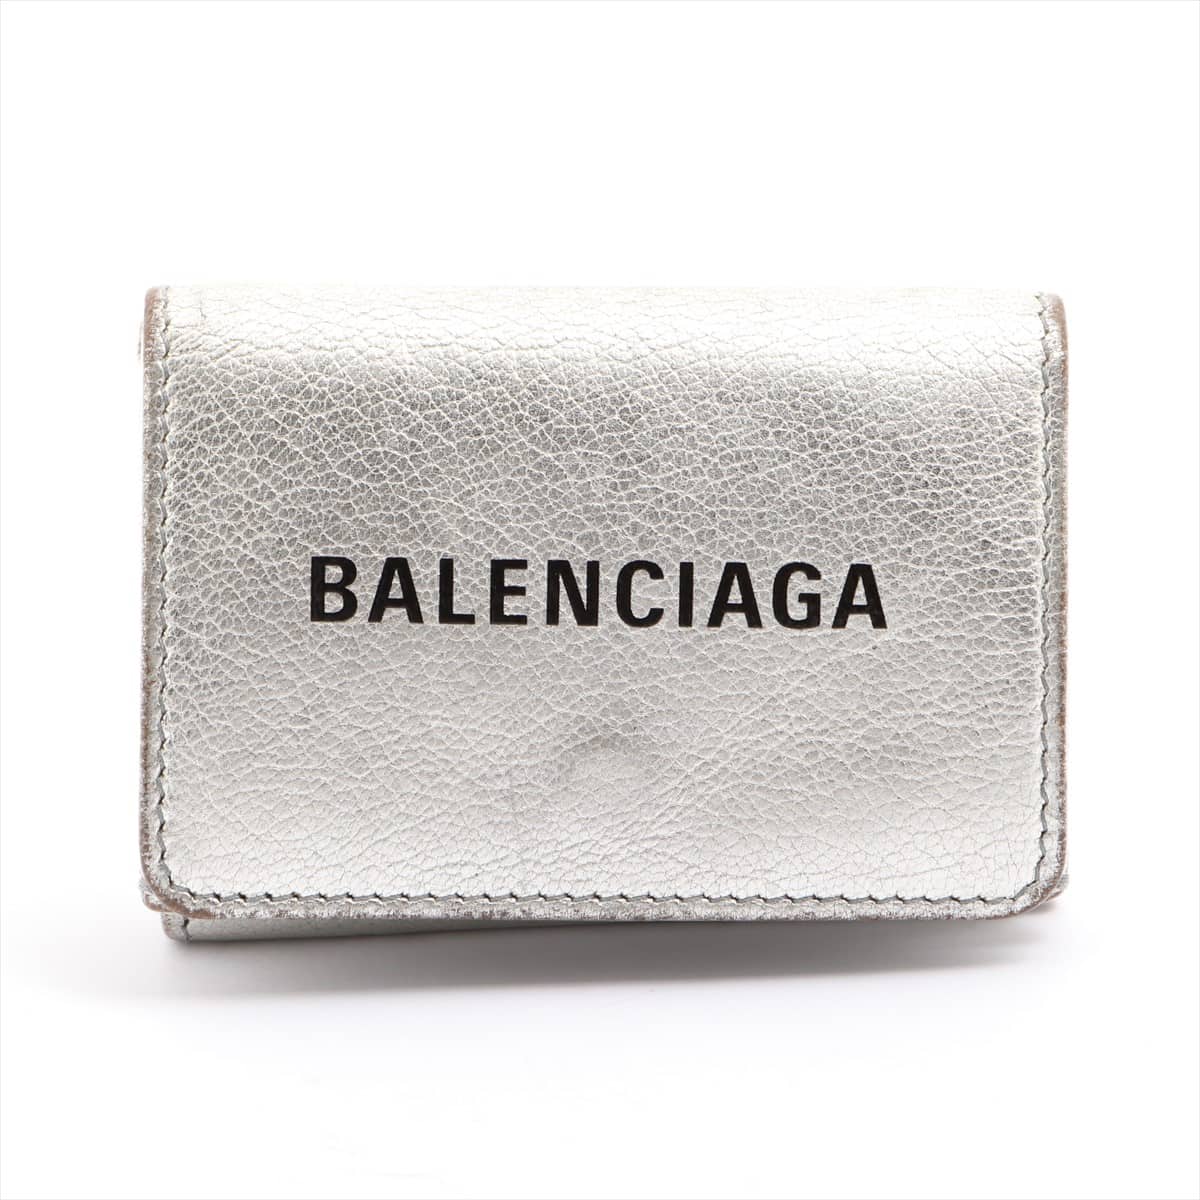 Balenciaga Everyday 551921 Leather Wallet Silver